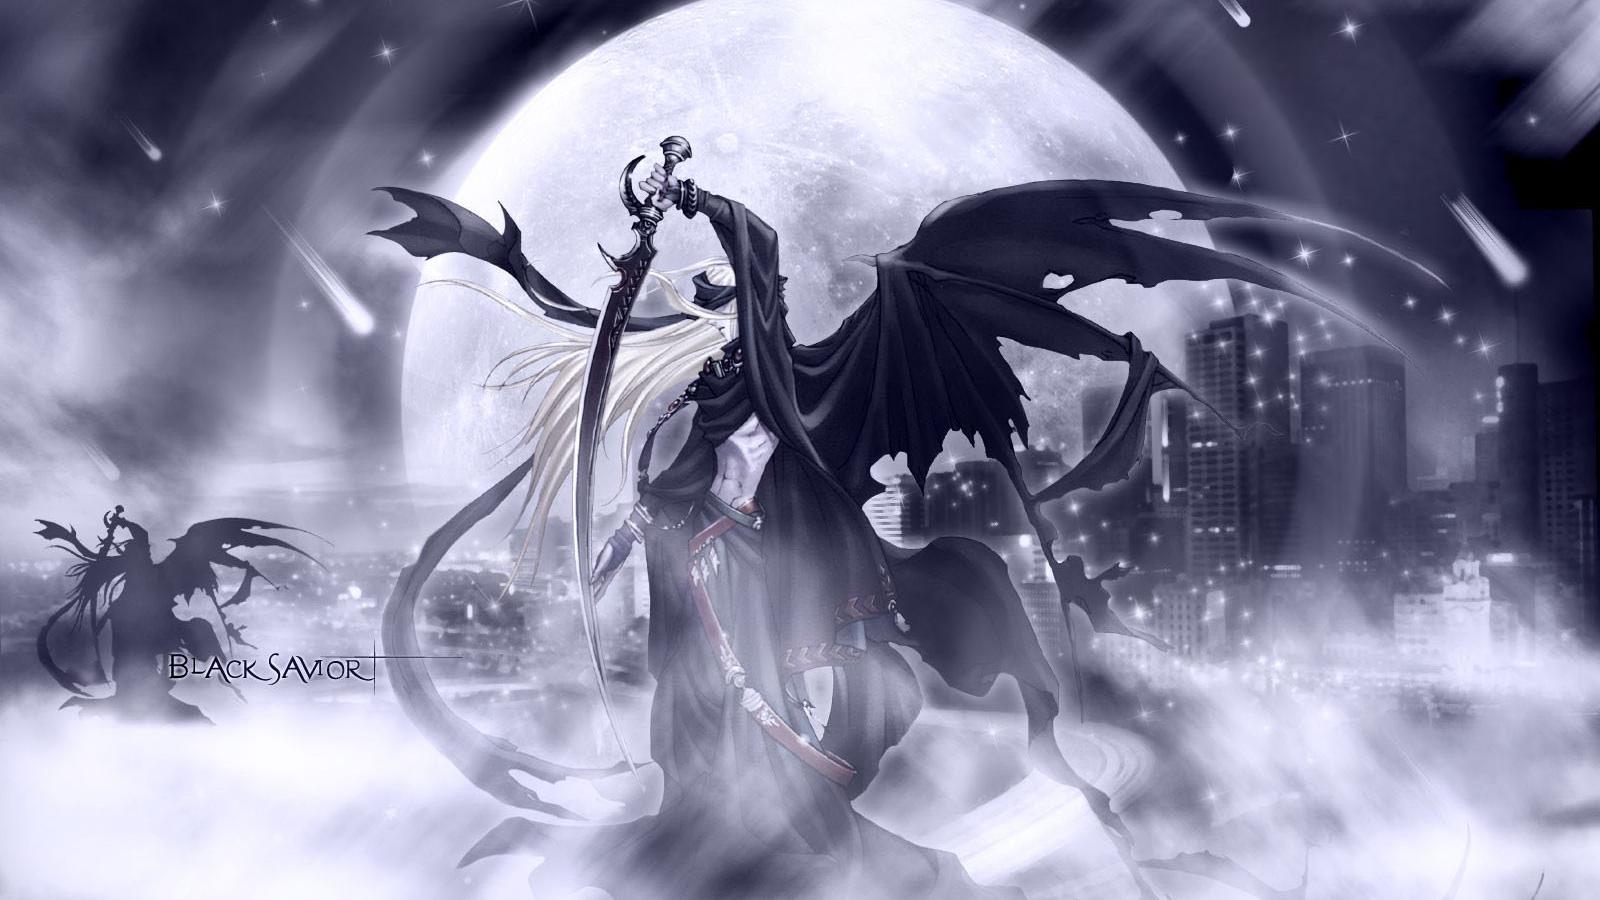 carta da parati anime 1600x900,cg artwork,personaggio fittizio,bianco e nero,illustrazione,creatura mitica